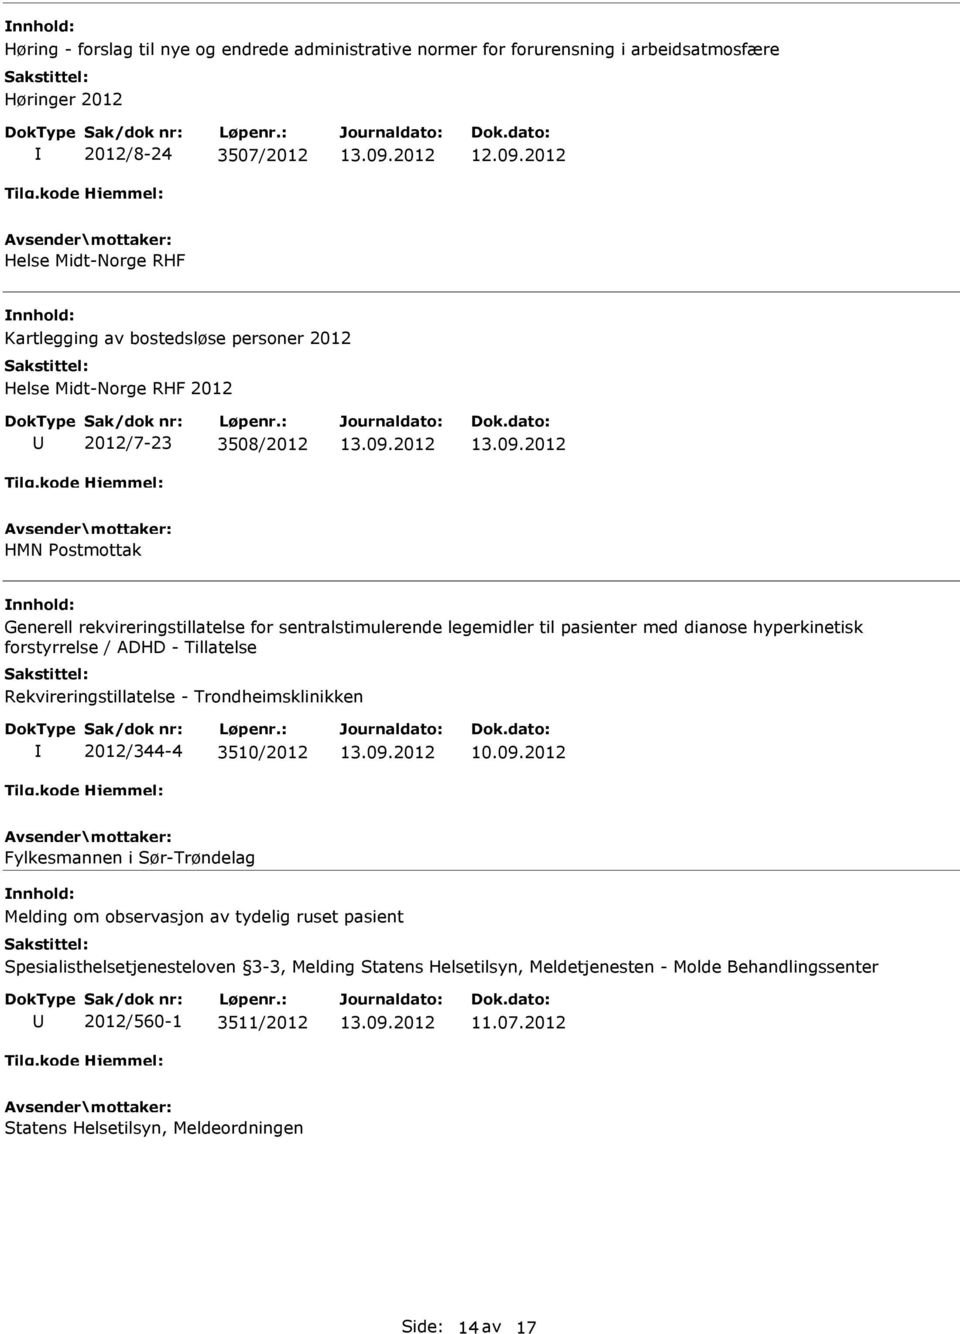 hyperkinetisk forstyrrelse / ADHD - Tillatelse Rekvireringstillatelse - Trondheimsklinikken 2012/344-4 3510/2012 Fylkesmannen i Sør-Trøndelag Melding om observasjon av tydelig